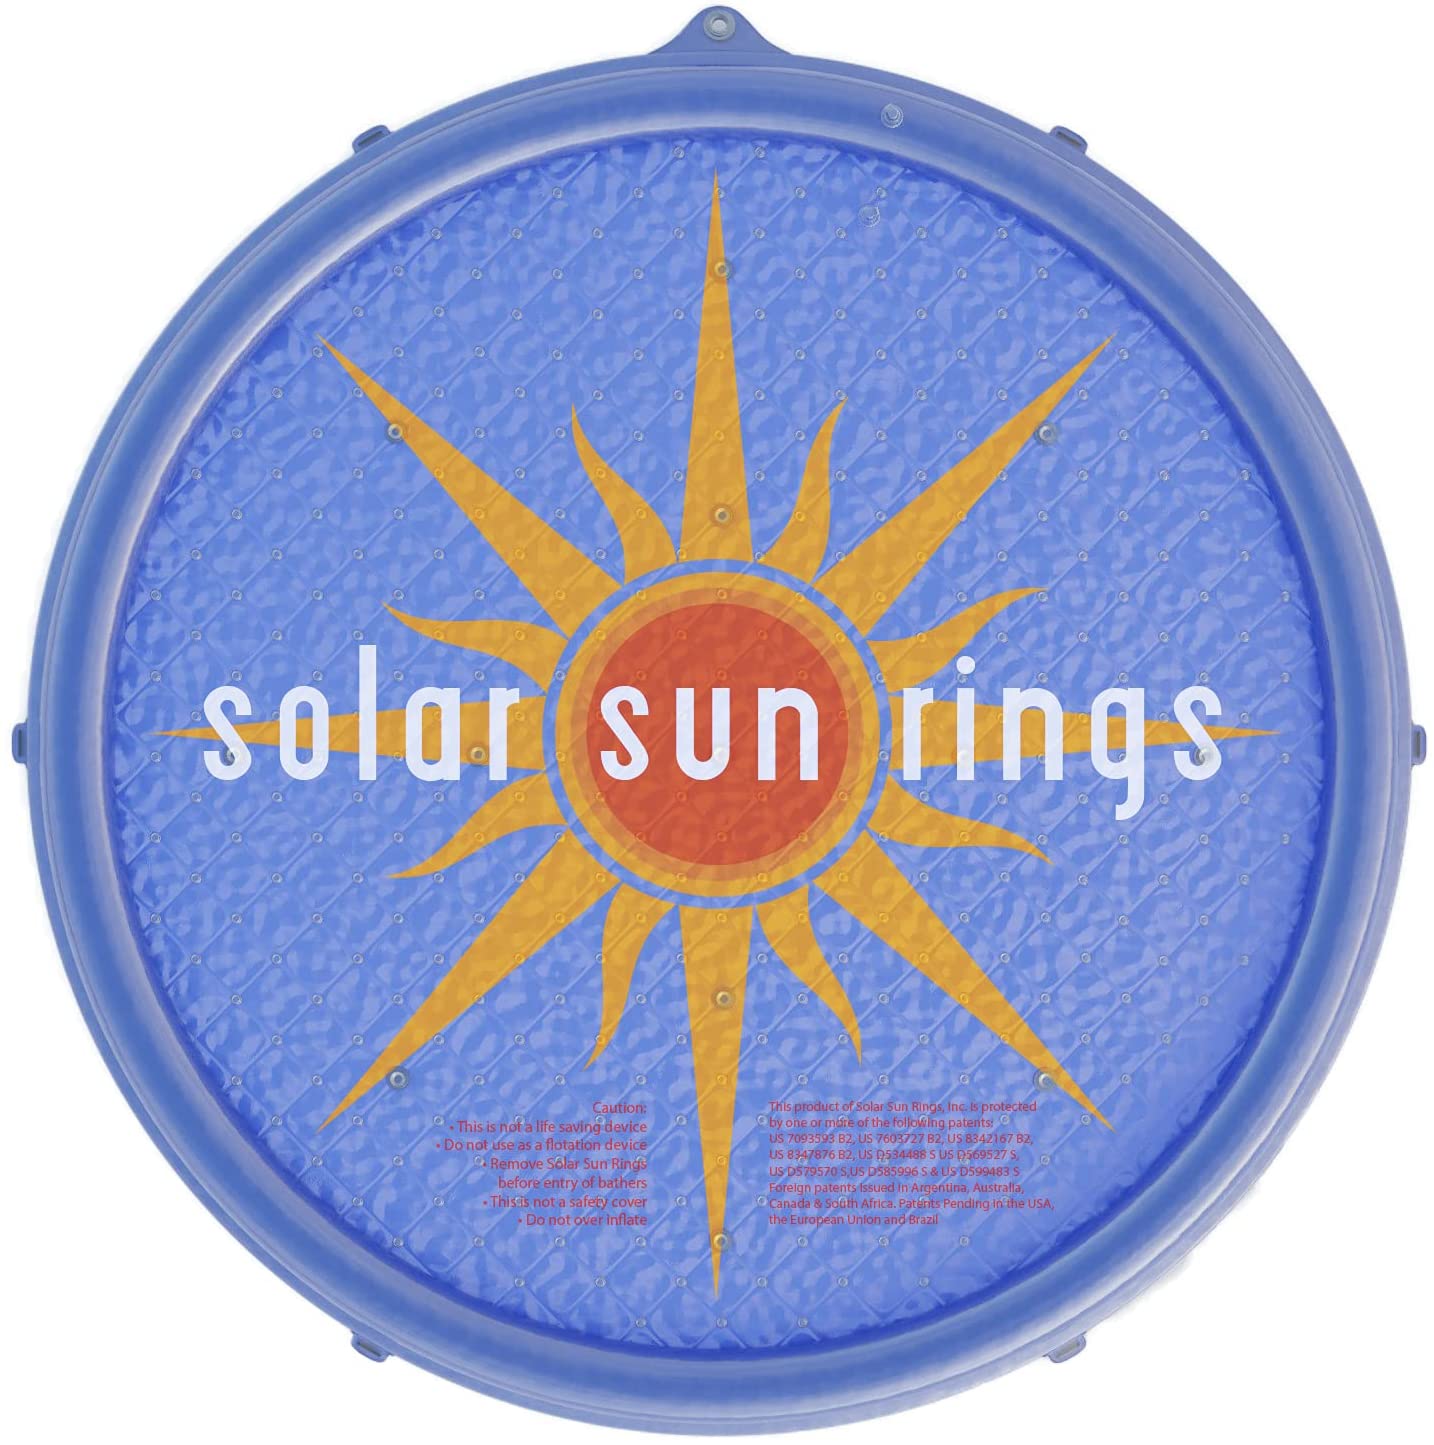 solarsun rings